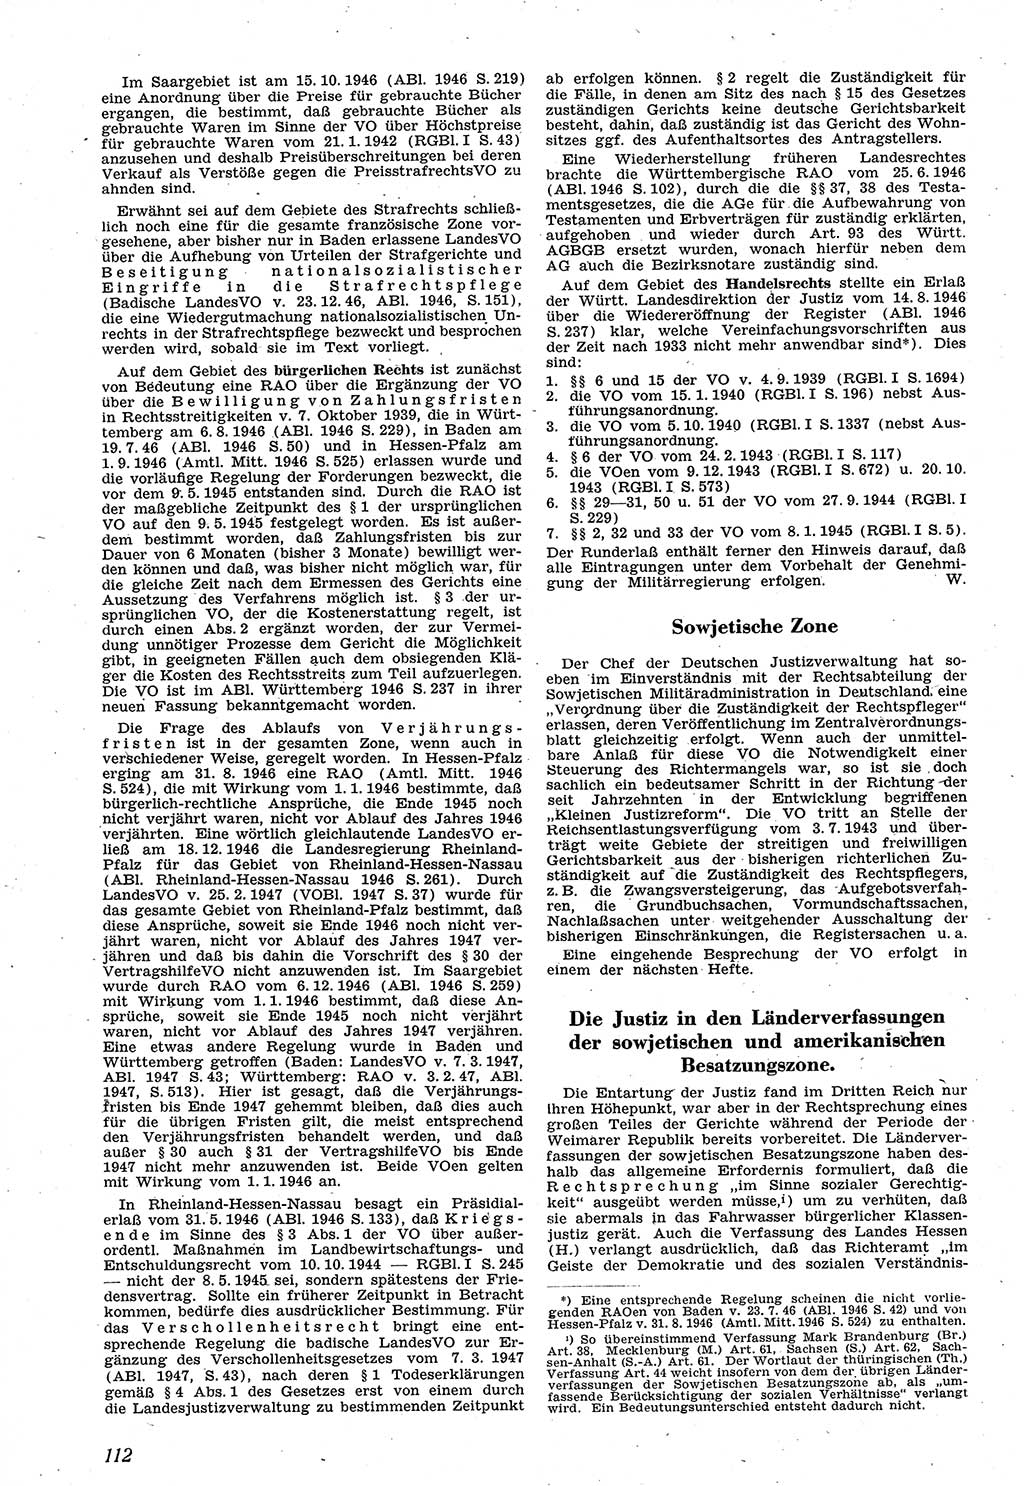 Neue Justiz (NJ), Zeitschrift für Recht und Rechtswissenschaft [Sowjetische Besatzungszone (SBZ) Deutschland], 1. Jahrgang 1947, Seite 112 (NJ SBZ Dtl. 1947, S. 112)